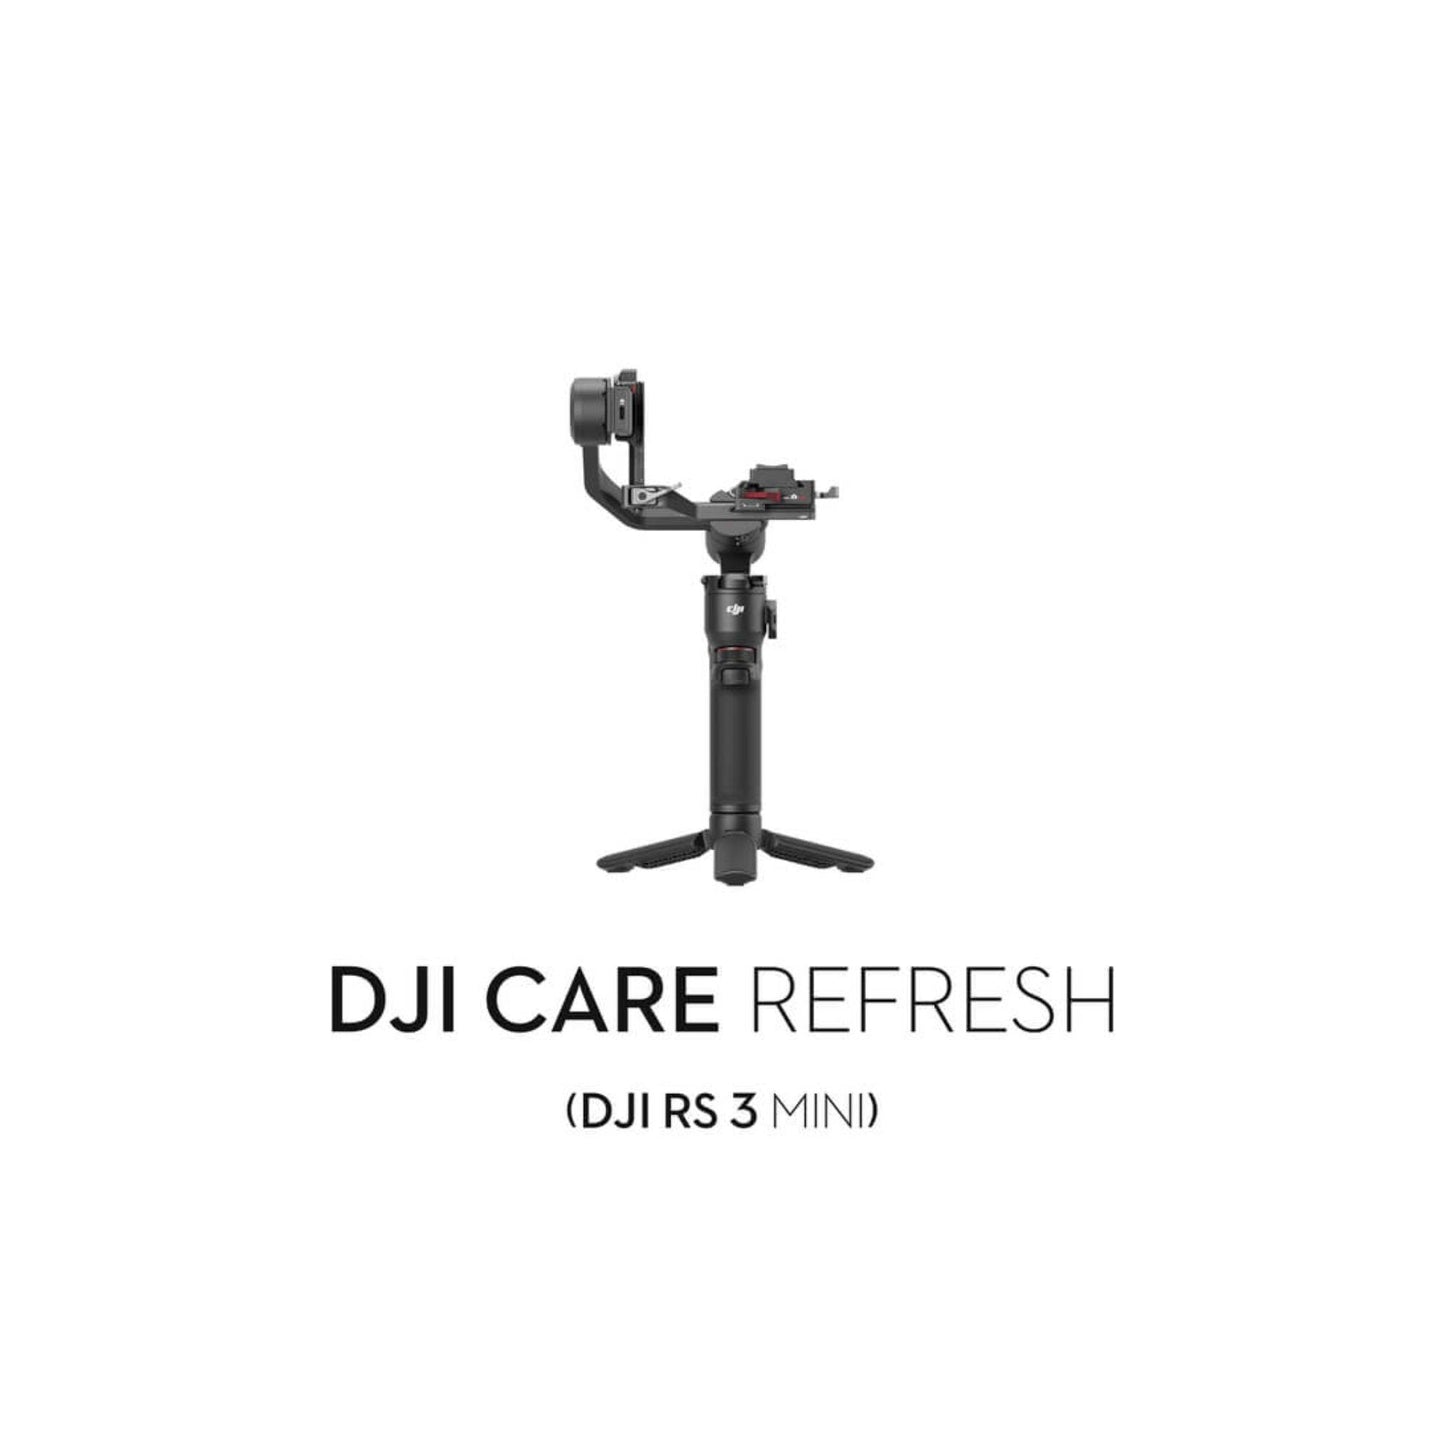 DJI Care Refresh 2-Year Plan (DJI RS 3 Mini) - Silverlight Optics